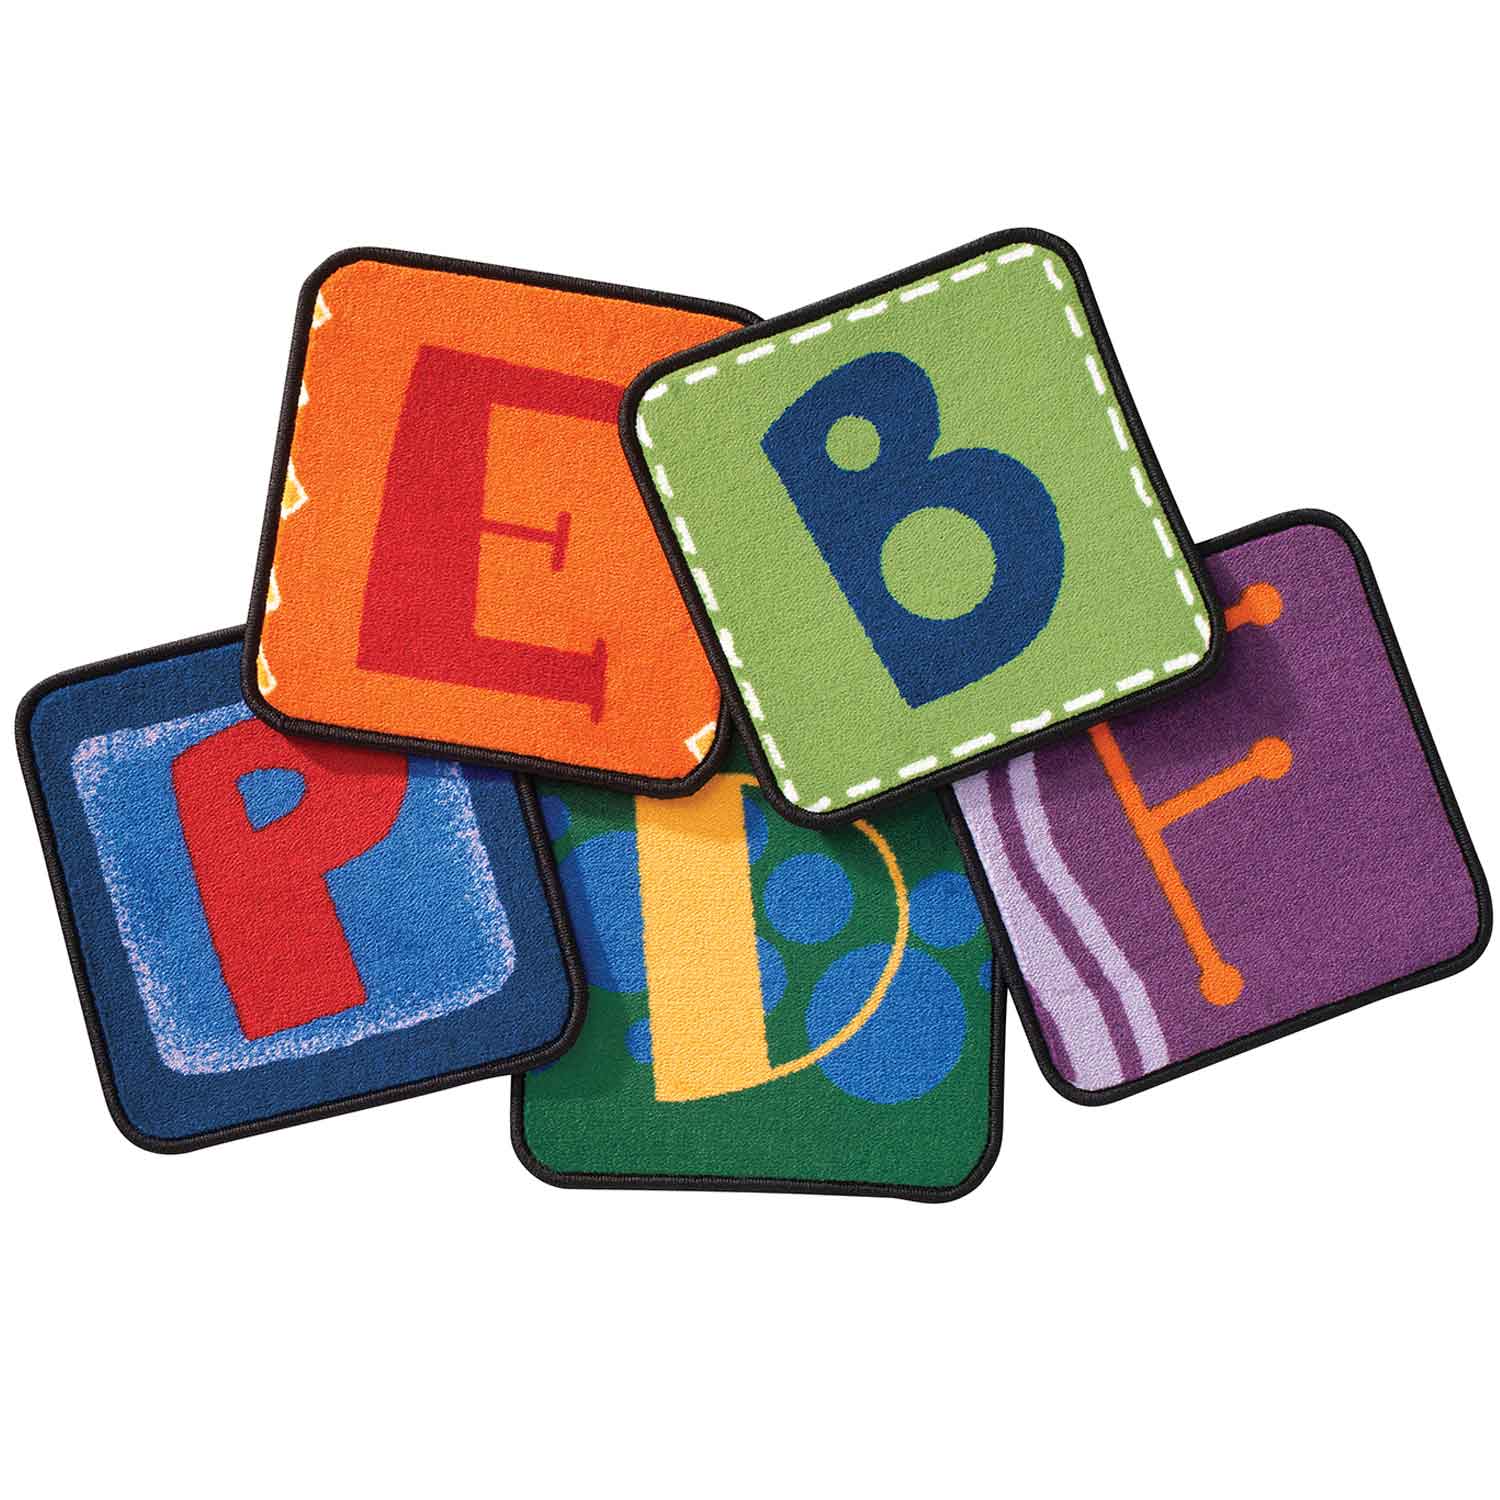 Alphabet Blocks Classroom Rug Squares